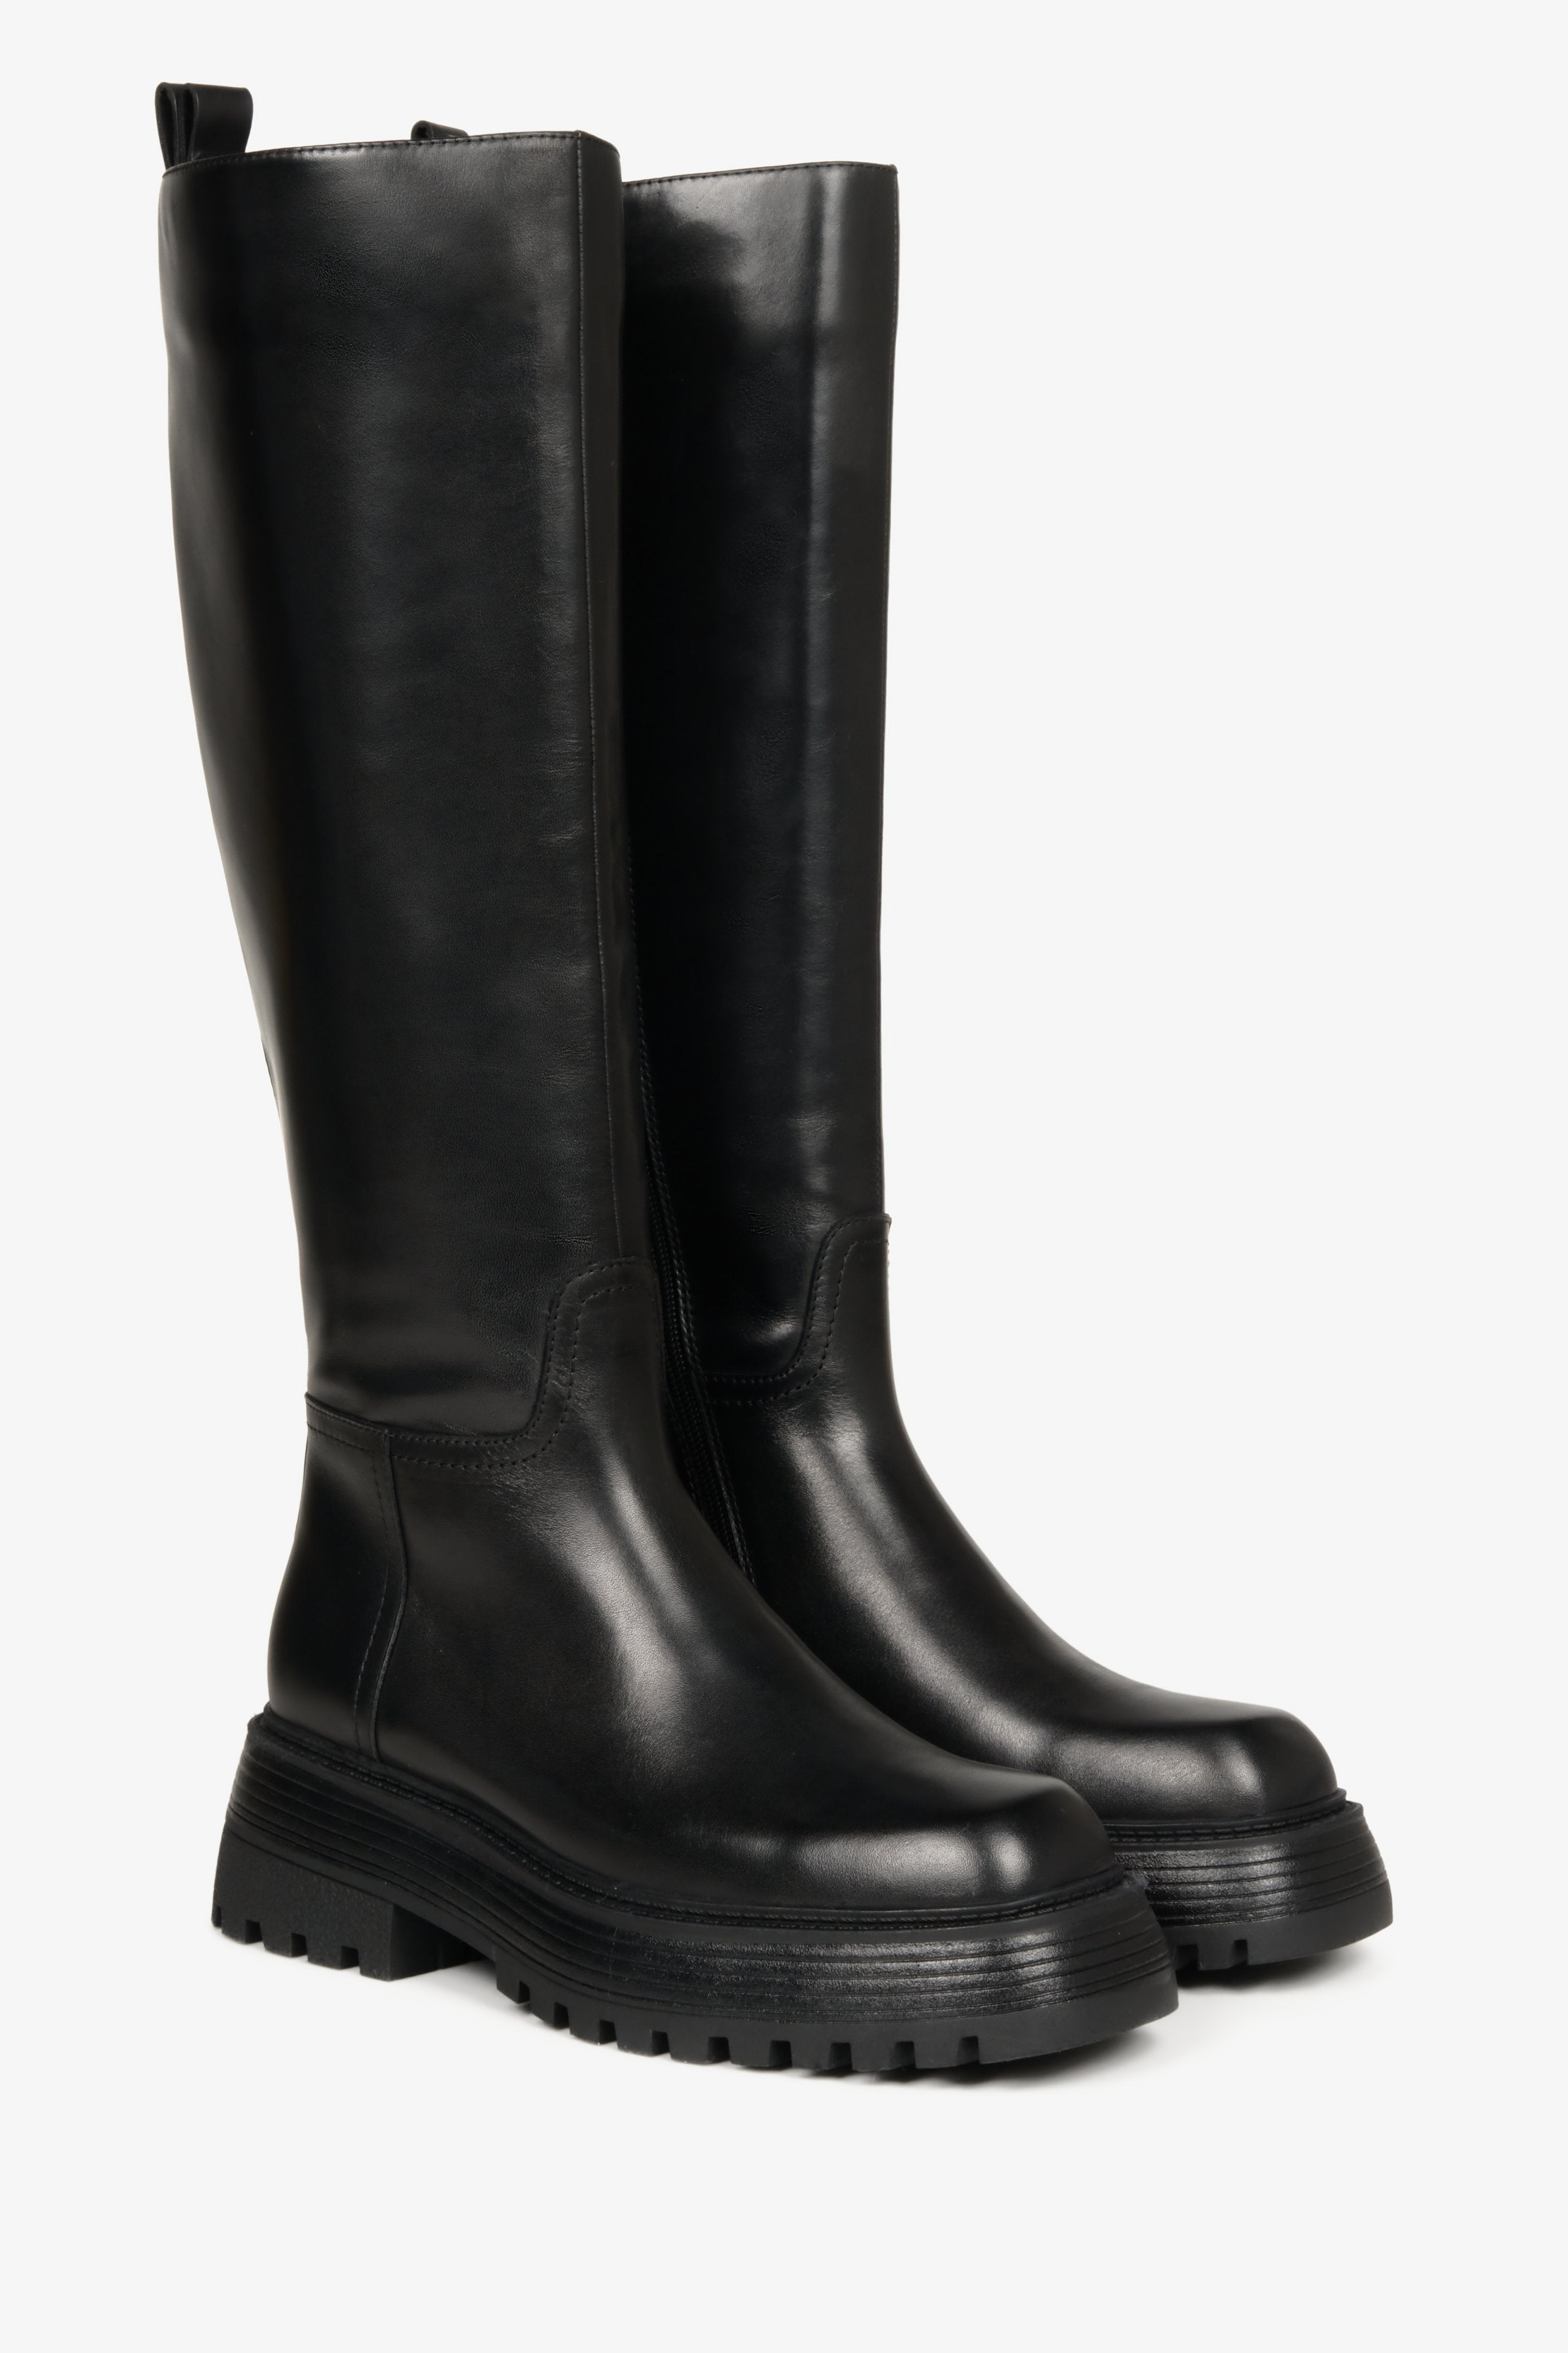 Czarne, podwyższane kozaki damskie na wiosnę ze skóry naturalnej z szeroką cholewą - zbliżenie na profil butów marki Estro.